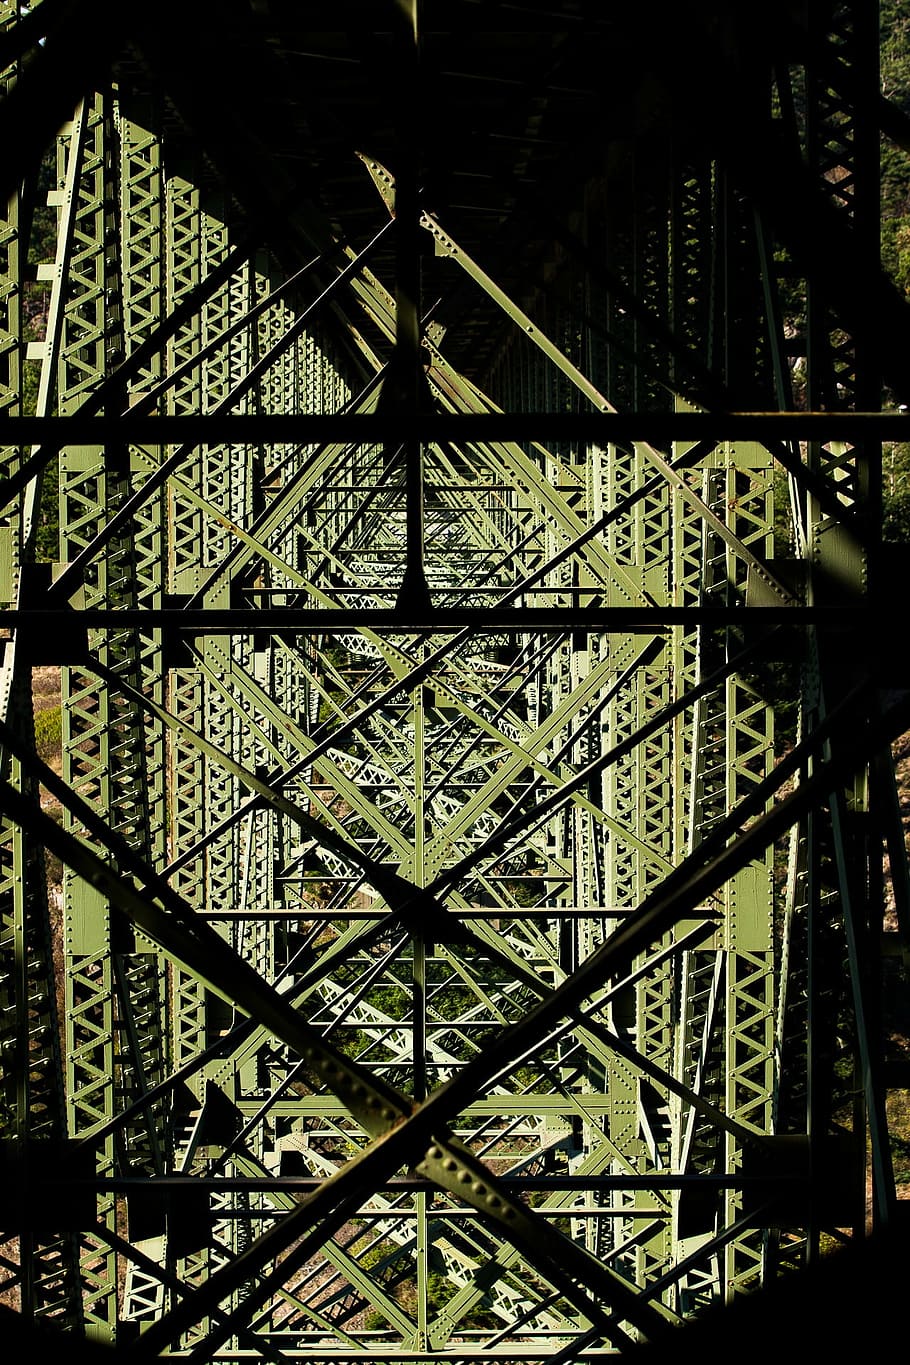 baixo, vista de ângulo, ponte, verde, metal, quadro, arquitetura, construção, infraestrutura, aço